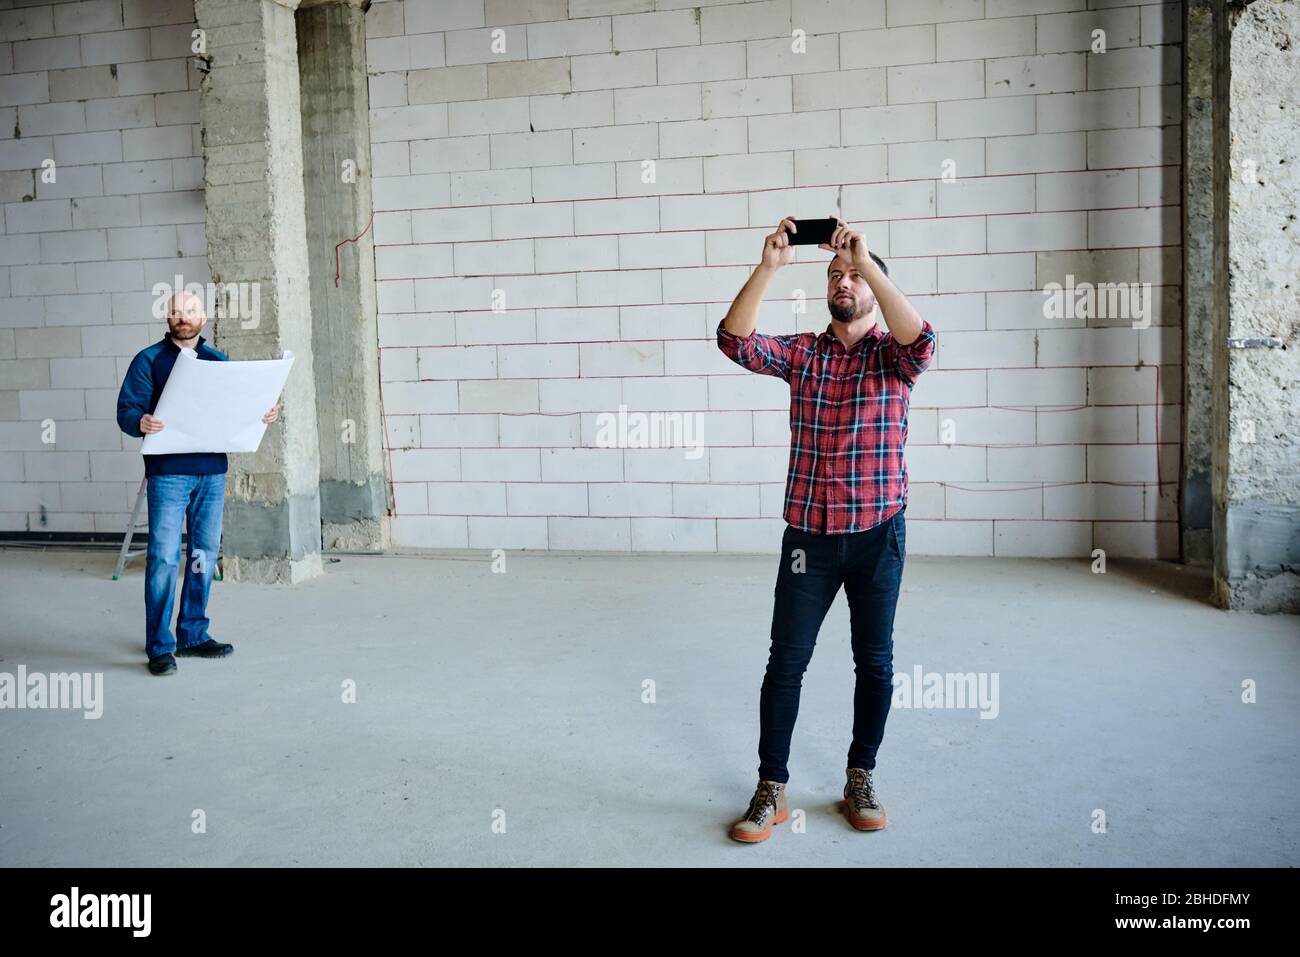 Junger Unternehmer mit Smartphone, der das unfertige Gebäudeinnere fotografiert, während sein Kollege im Hintergrund Blaupause hält Stockfoto